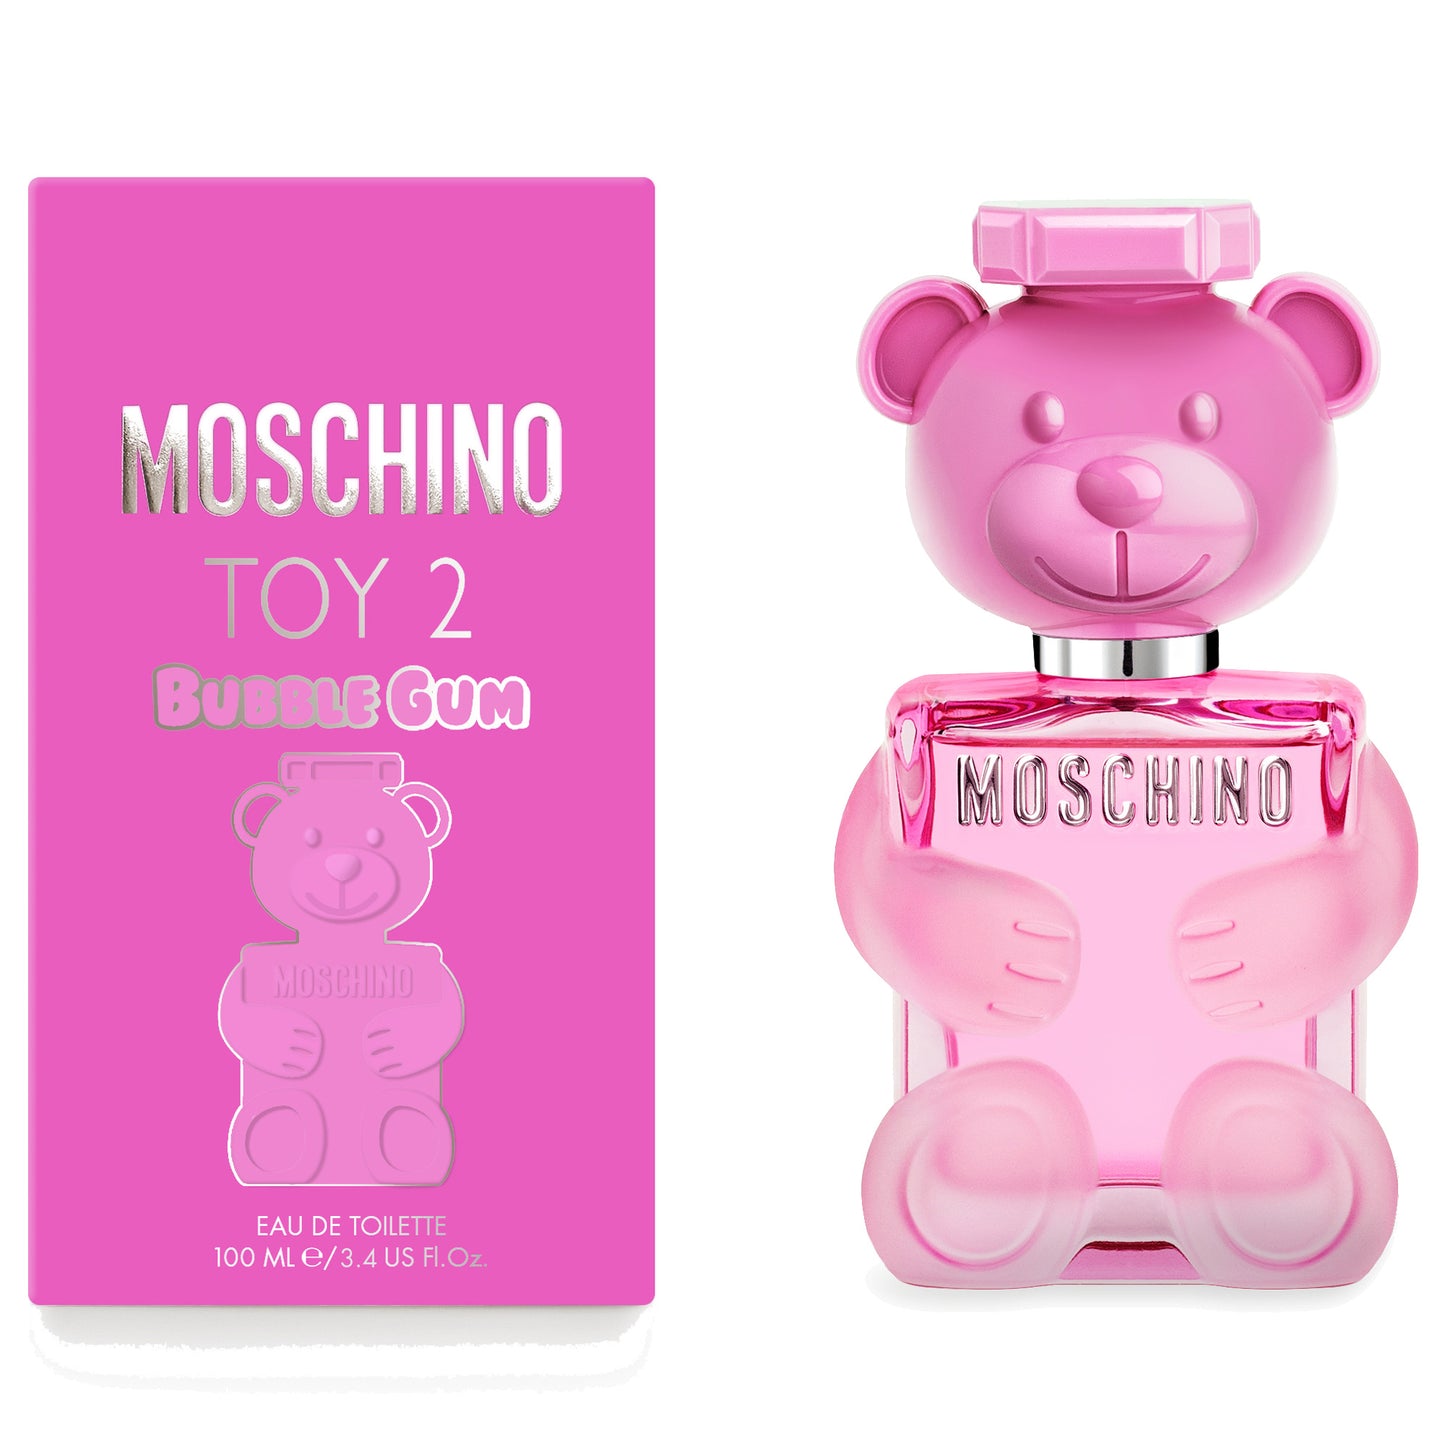 Moschino Toy 2 Bubble Gum  Eau de Toilette